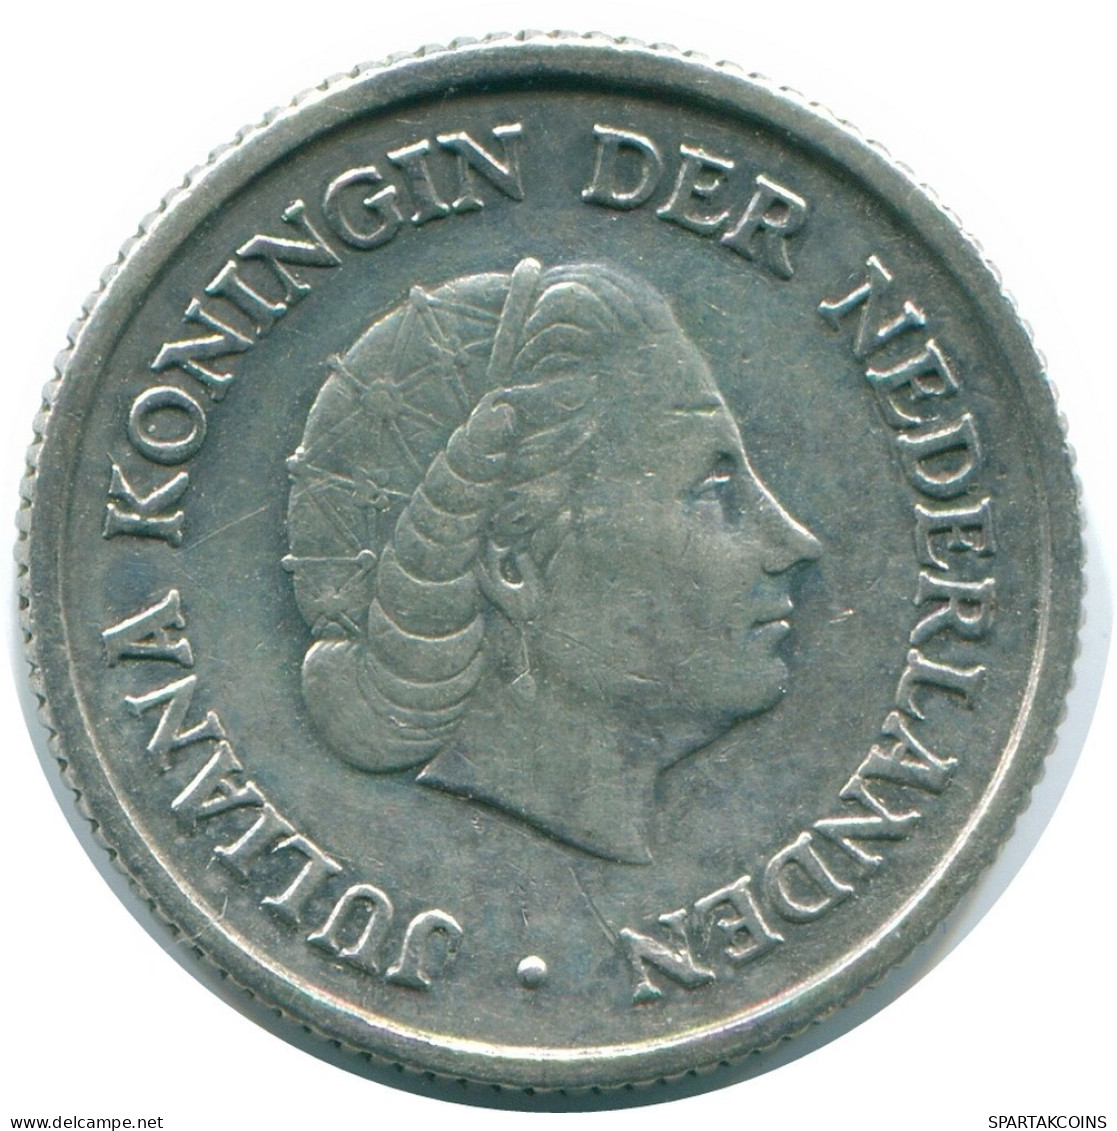 1/4 GULDEN 1957 NIEDERLÄNDISCHE ANTILLEN SILBER Koloniale Münze #NL10975.4.D.A - Antilles Néerlandaises